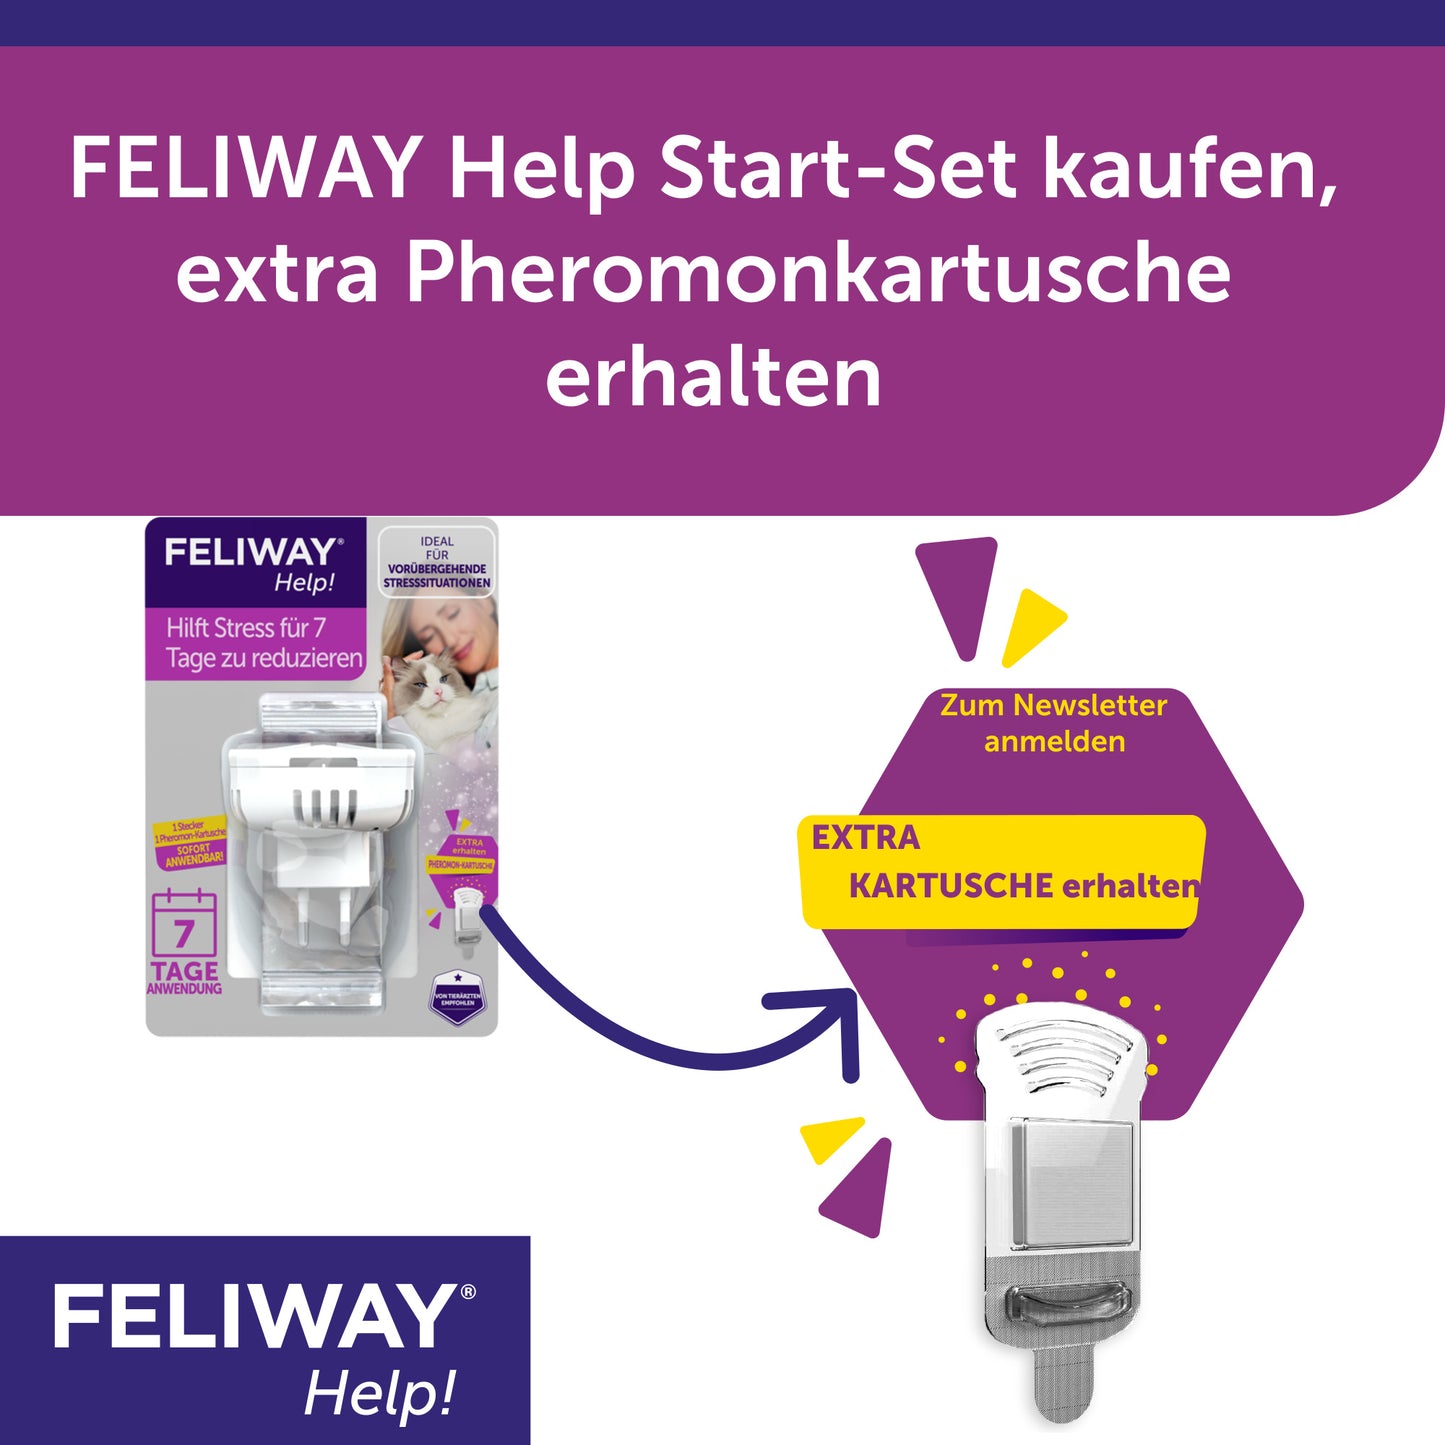 Feliway Help Start-Set kaufen und eine Extra Kartusche erhalten